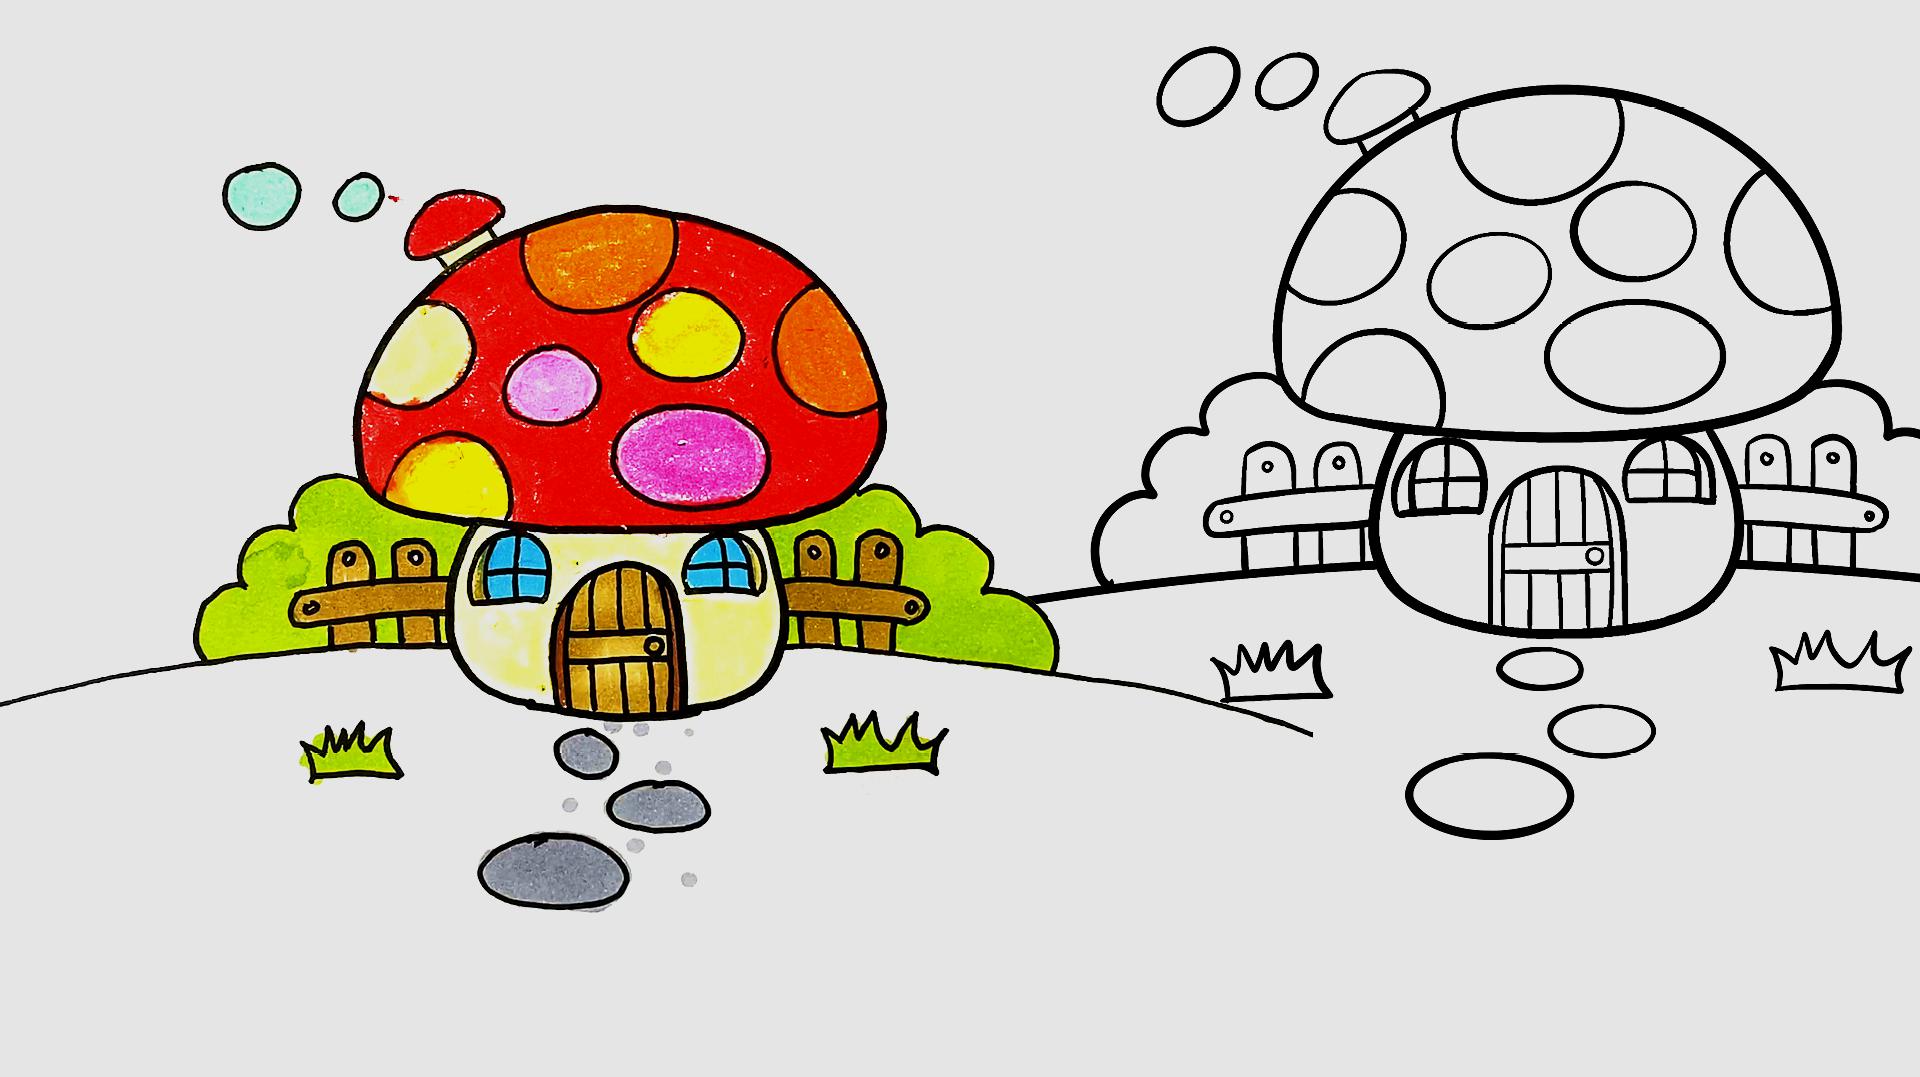 视频教程,1分钟轻松学会 服务升级 2简笔画作品三:圆圆的蘑菇屋,那么